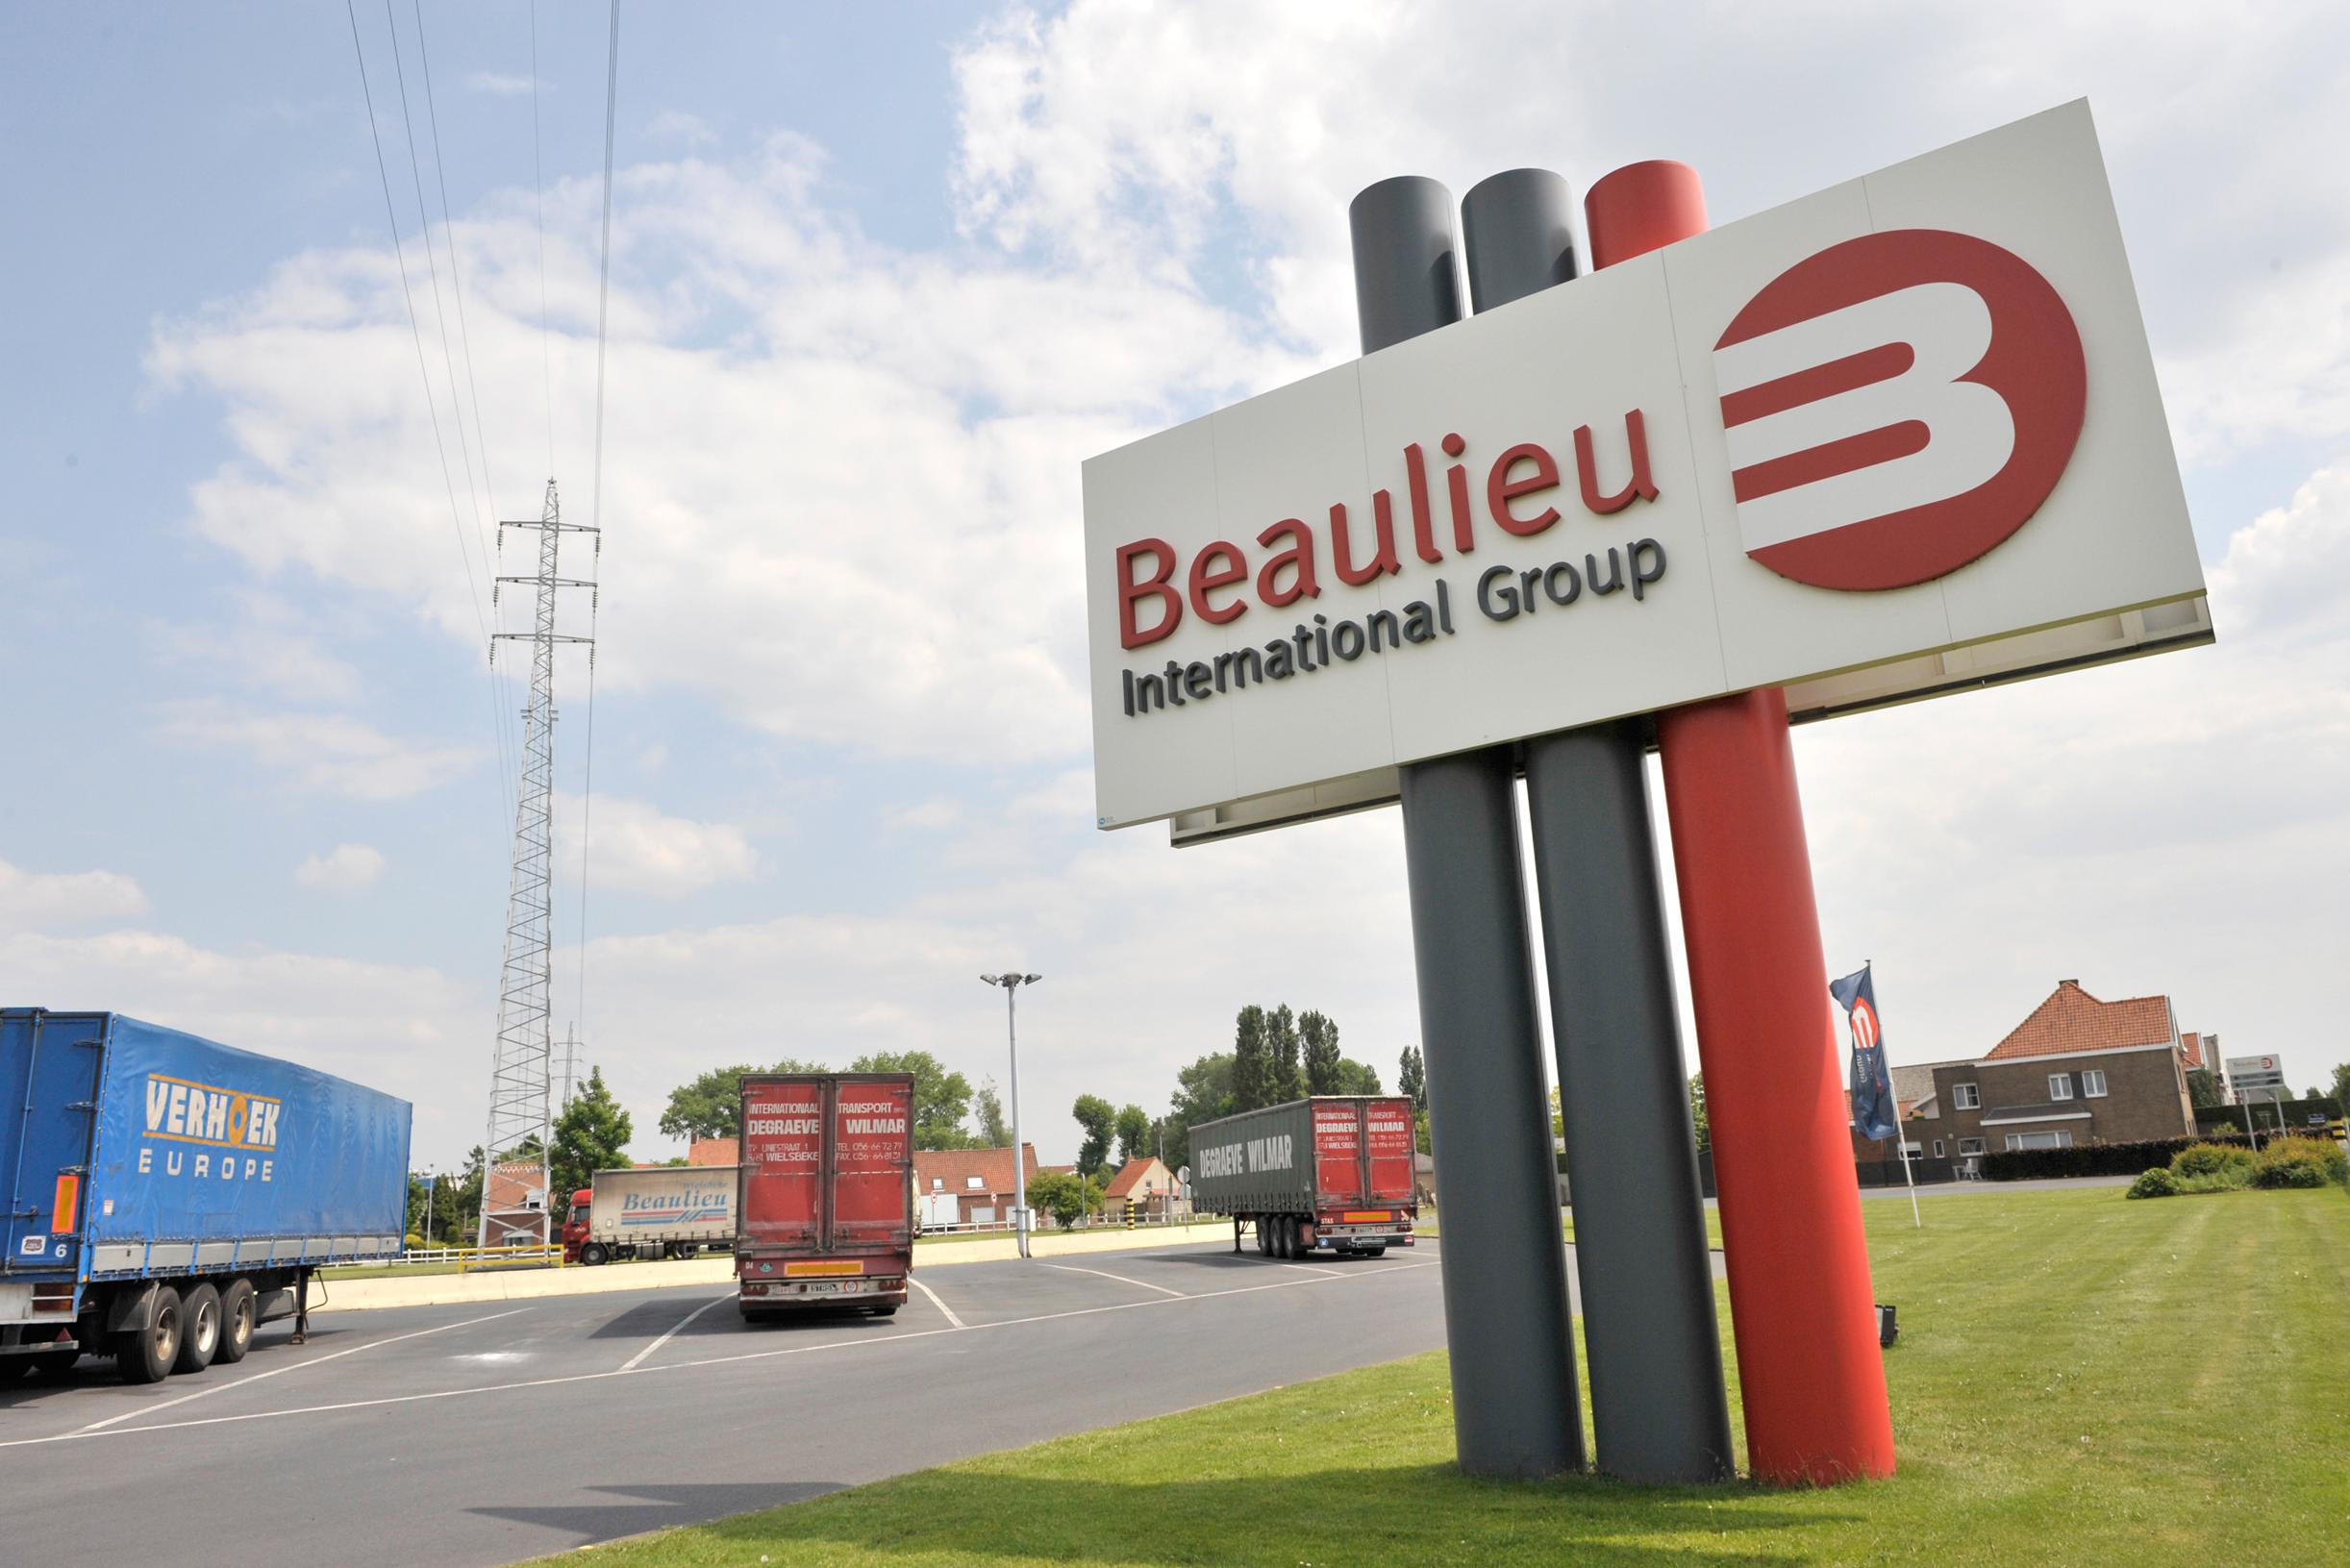 Beaulieu vuole chiudere una fabbrica a Welsbeke: a rischio 174 posti di lavoro, i sindacati ‘assolutamente sorpresi’ (Wielsbeke)